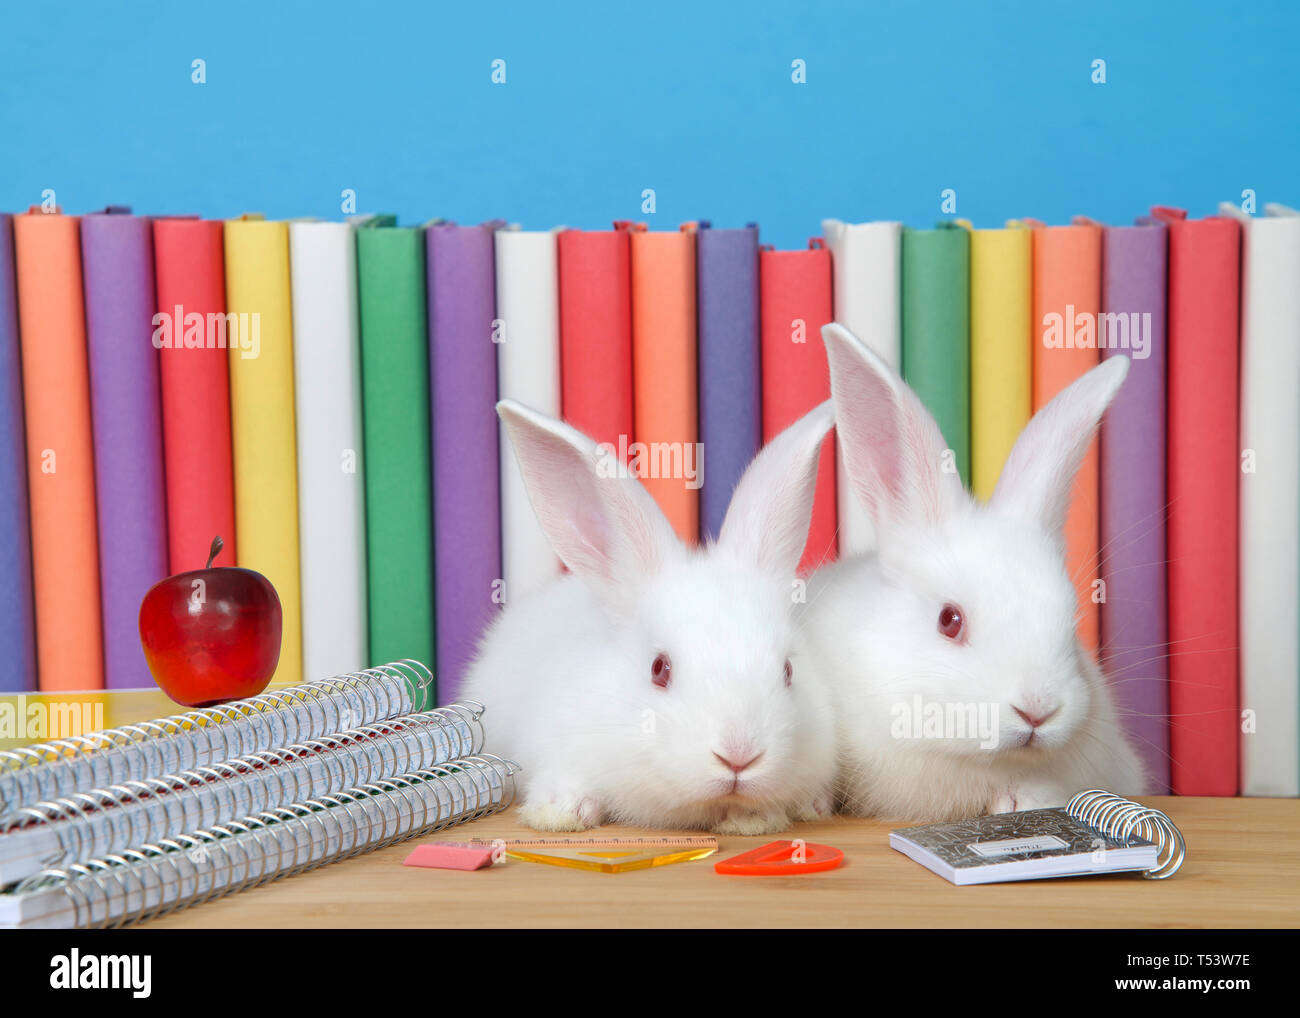 Due adorabili albino bianchi baby bunny conigli seduti ad una scrivania in legno con rilegatura a spirale notebook, forniture di matematica e una piccola mela rossa, colorata storia bo Foto Stock